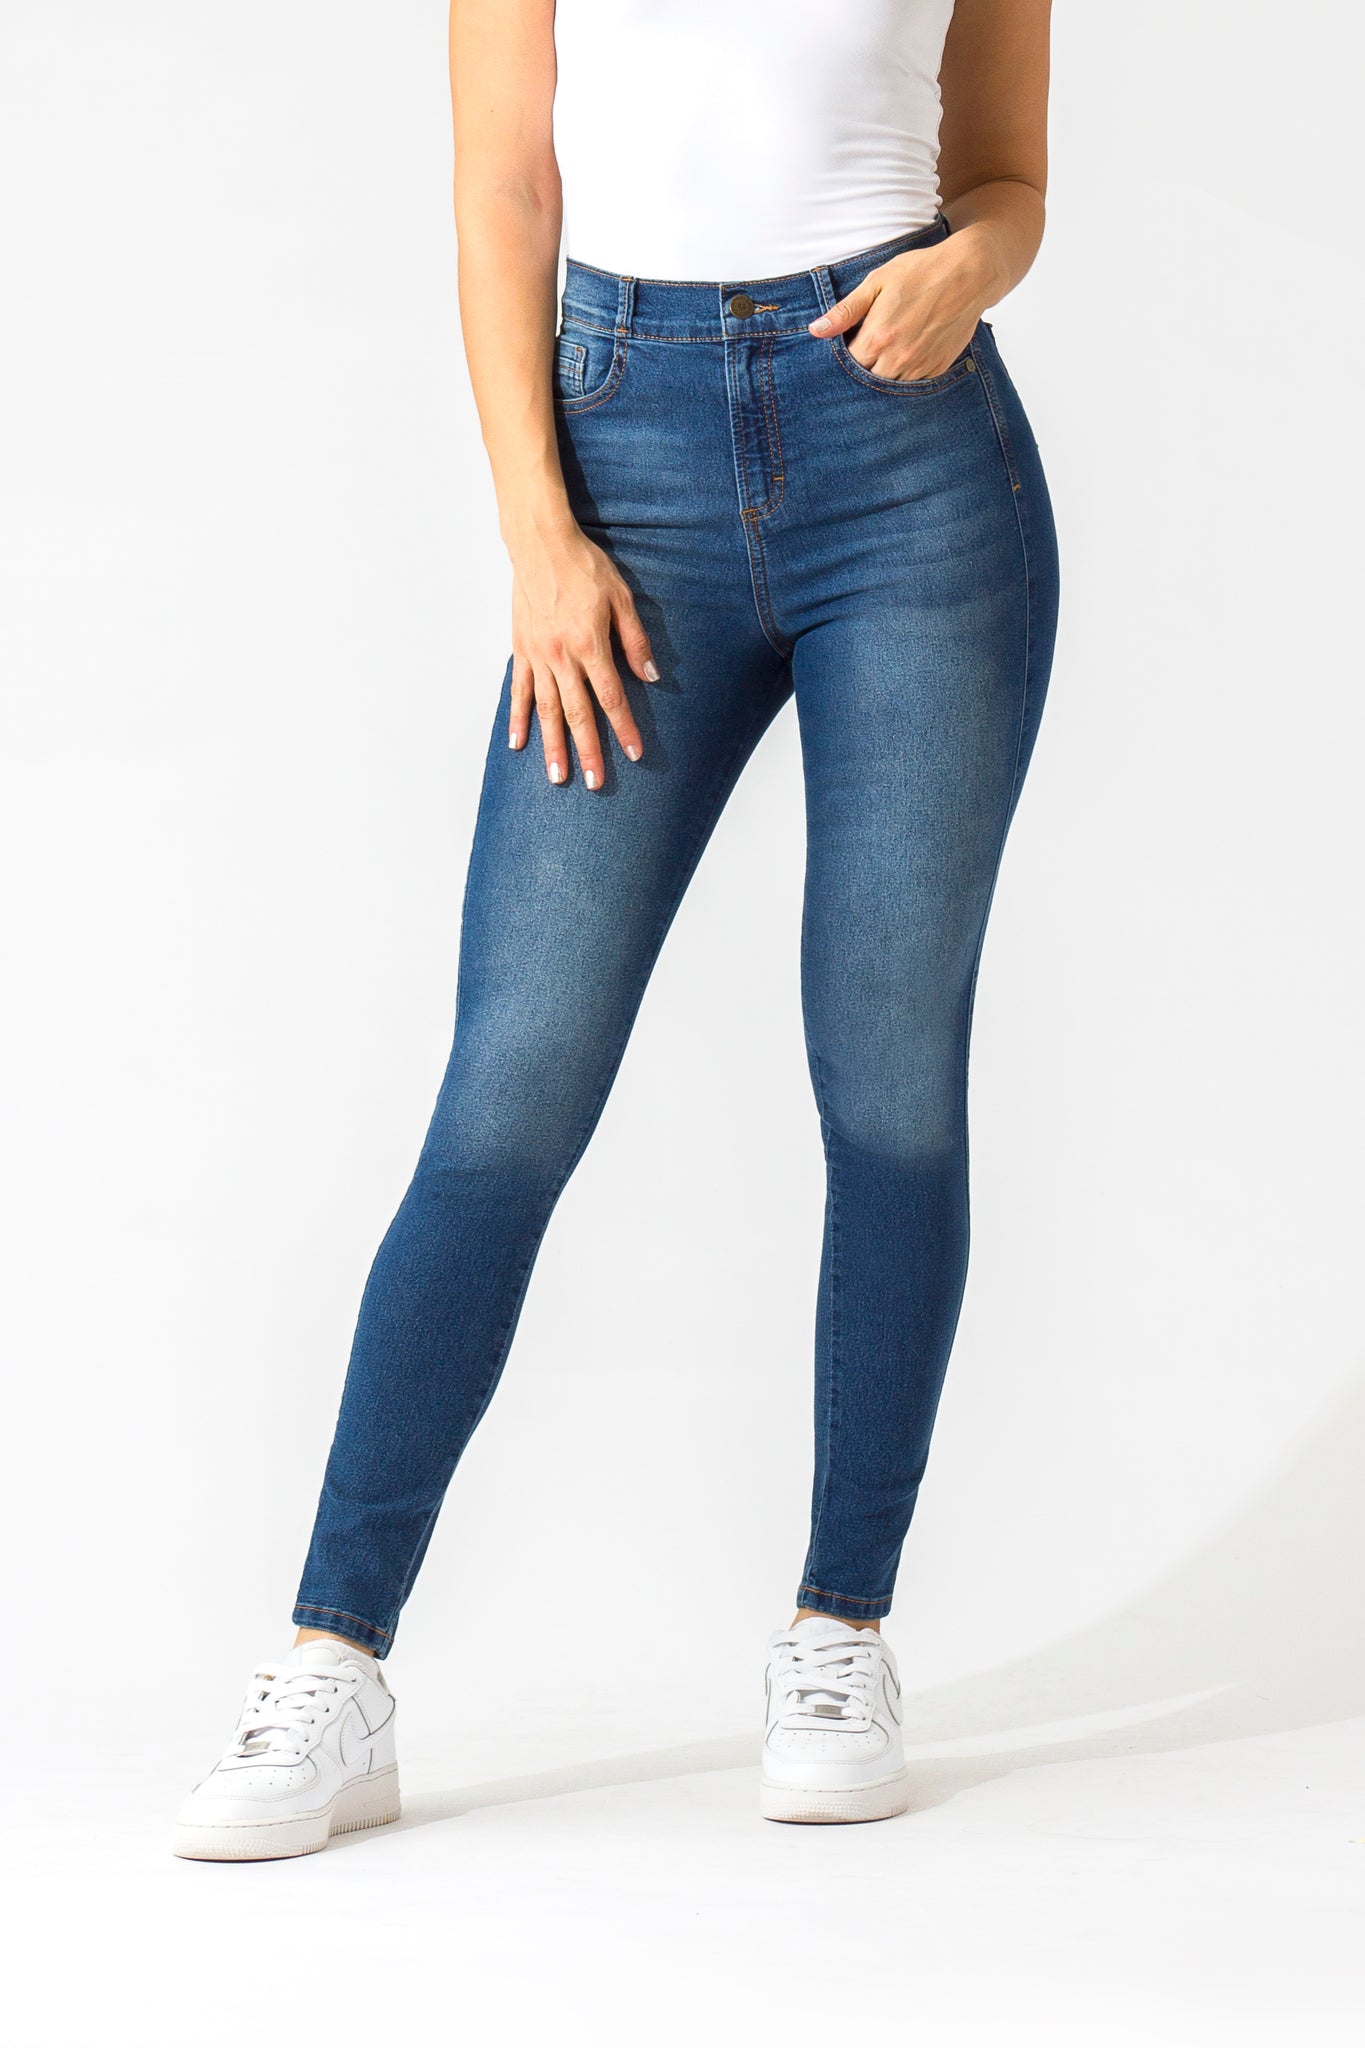 OHPOMP!® Basics, Cintura Alta Skinny Jeans Azul Medio OP1005